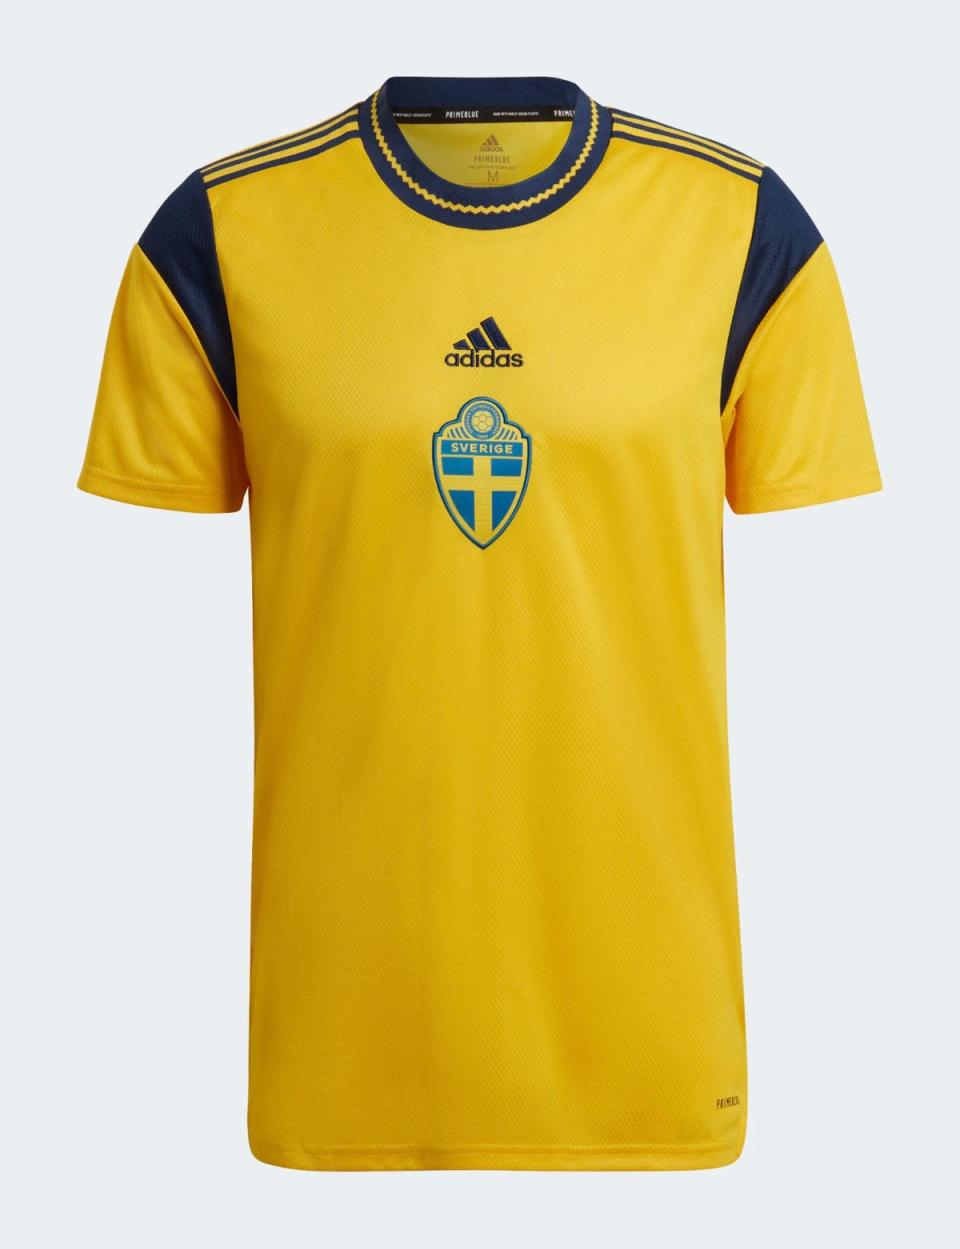  (Adidas / Sweden)